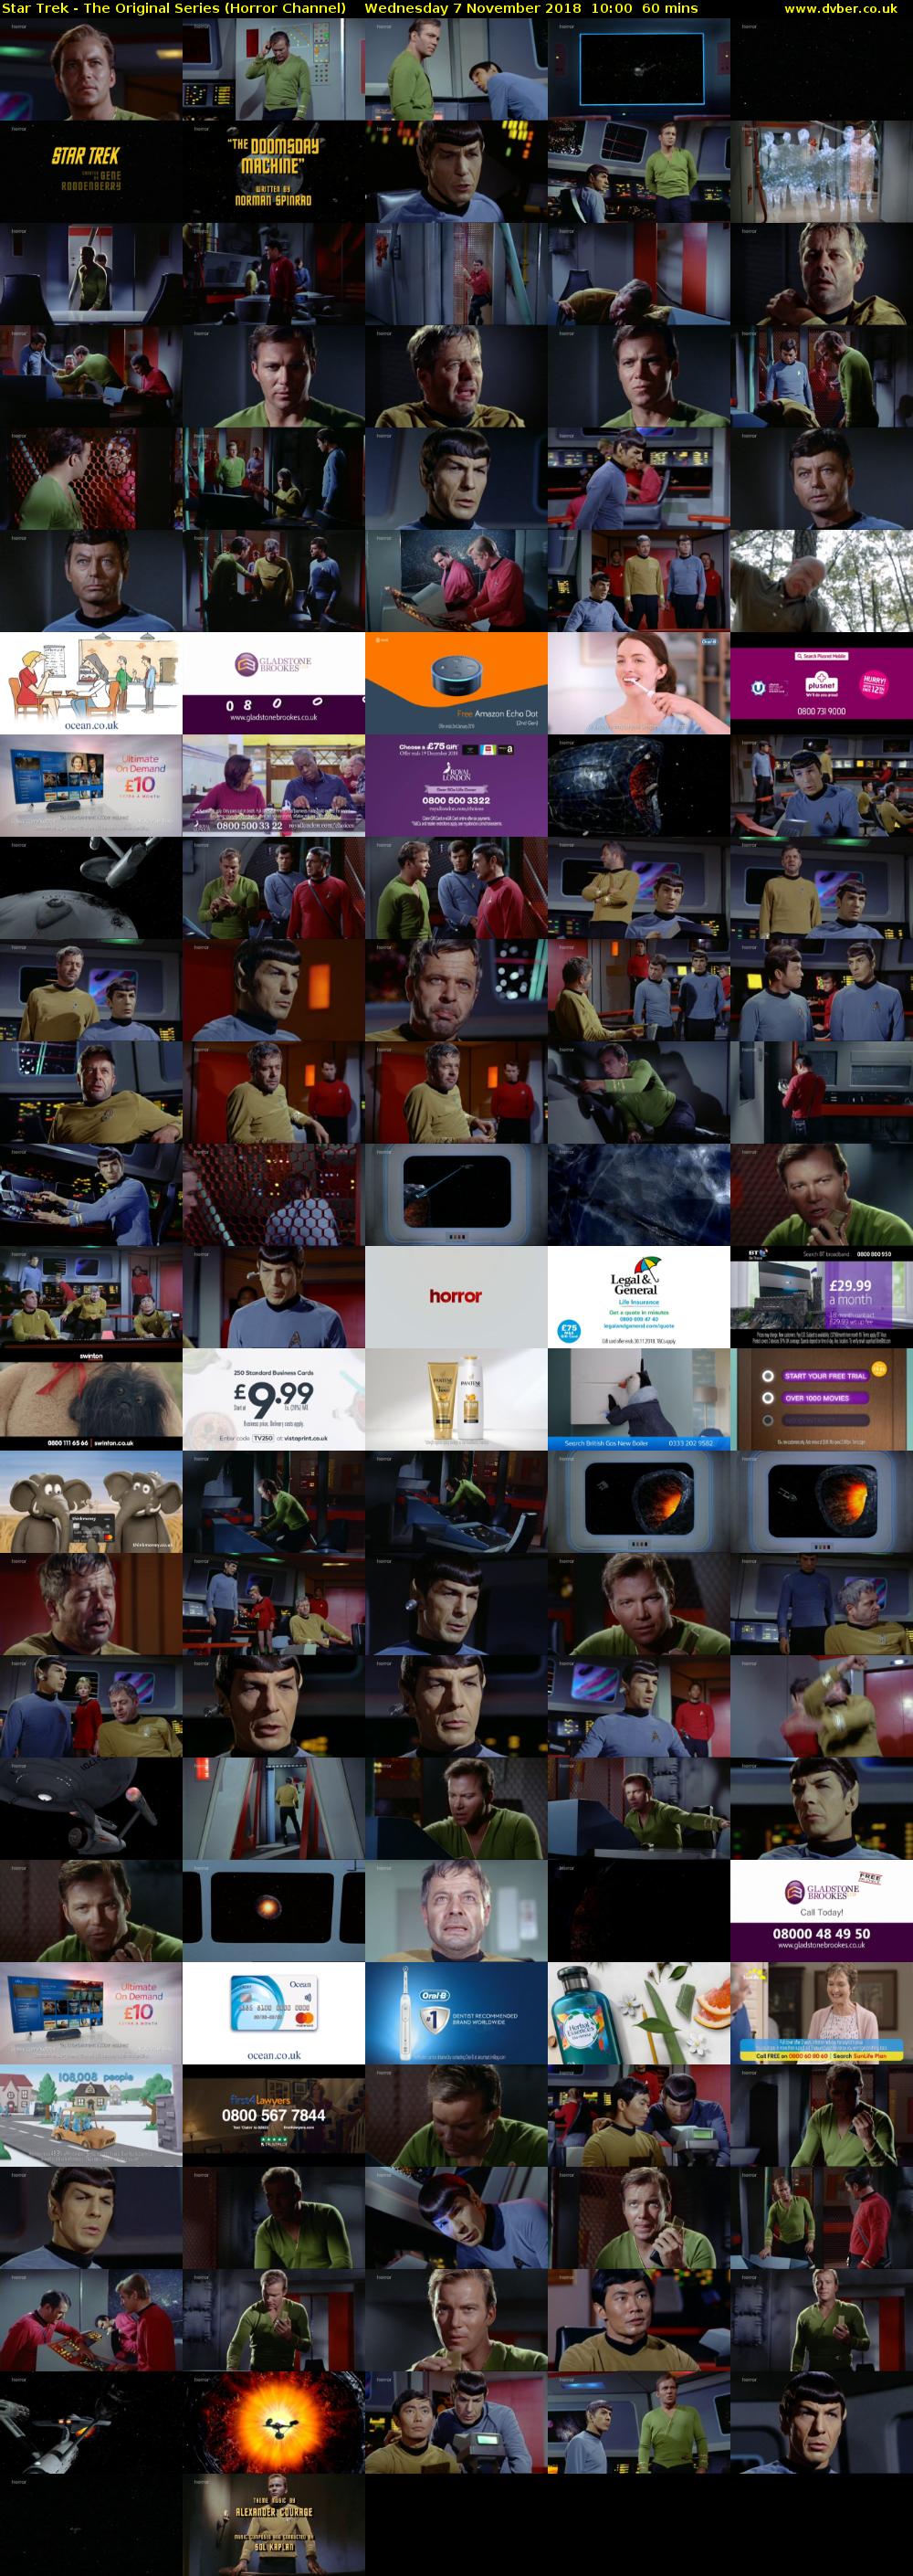 Star Trek - The Original Series (Horror Channel) Wednesday 7 November 2018 10:00 - 11:00